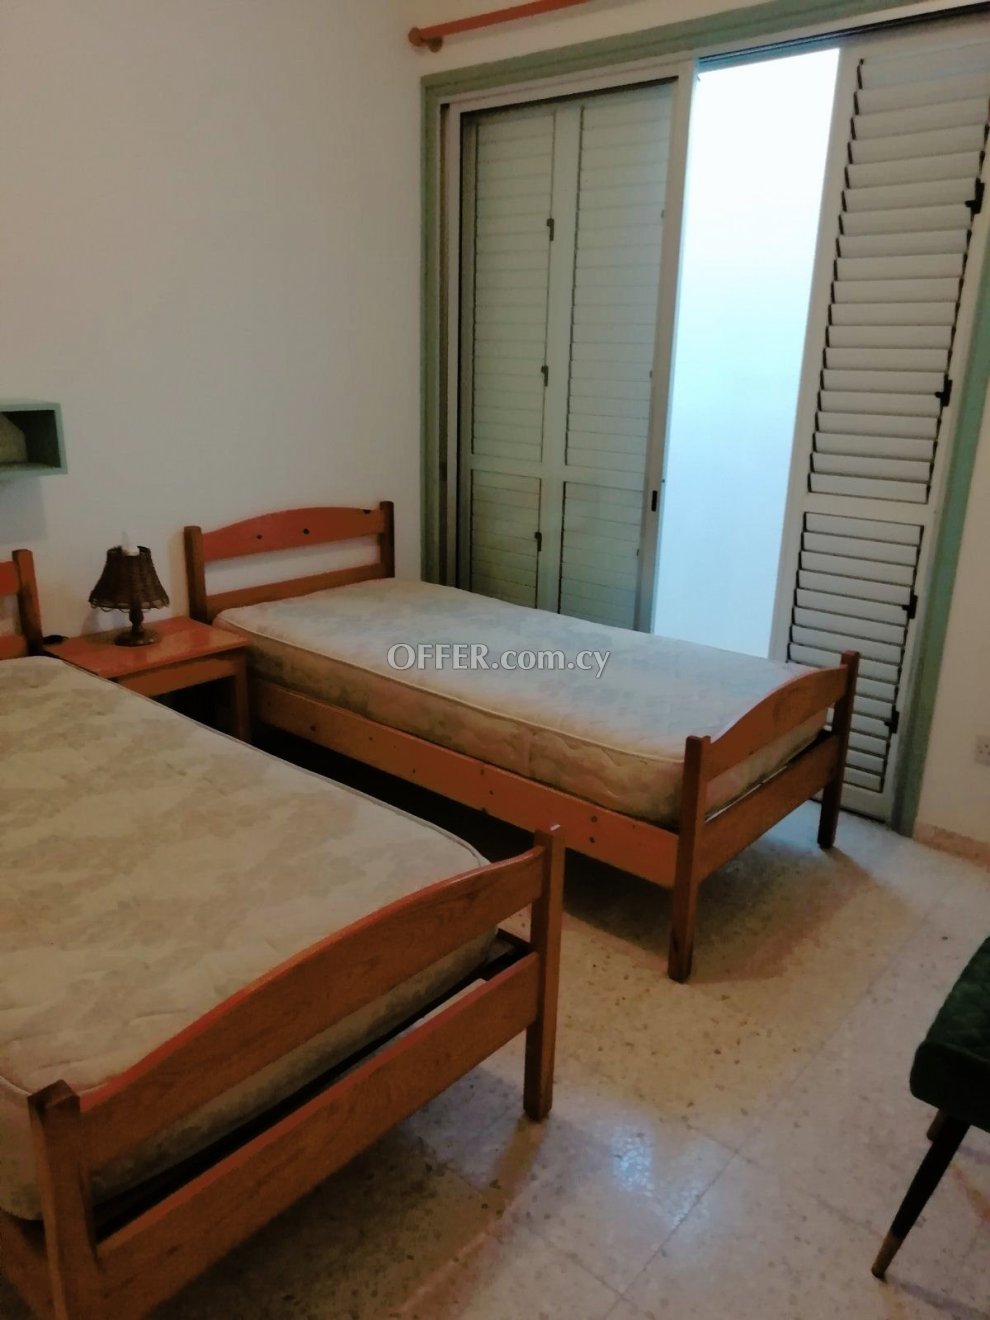 2 Bed Maisonette for rent in Kissonerga, Paphos - 2